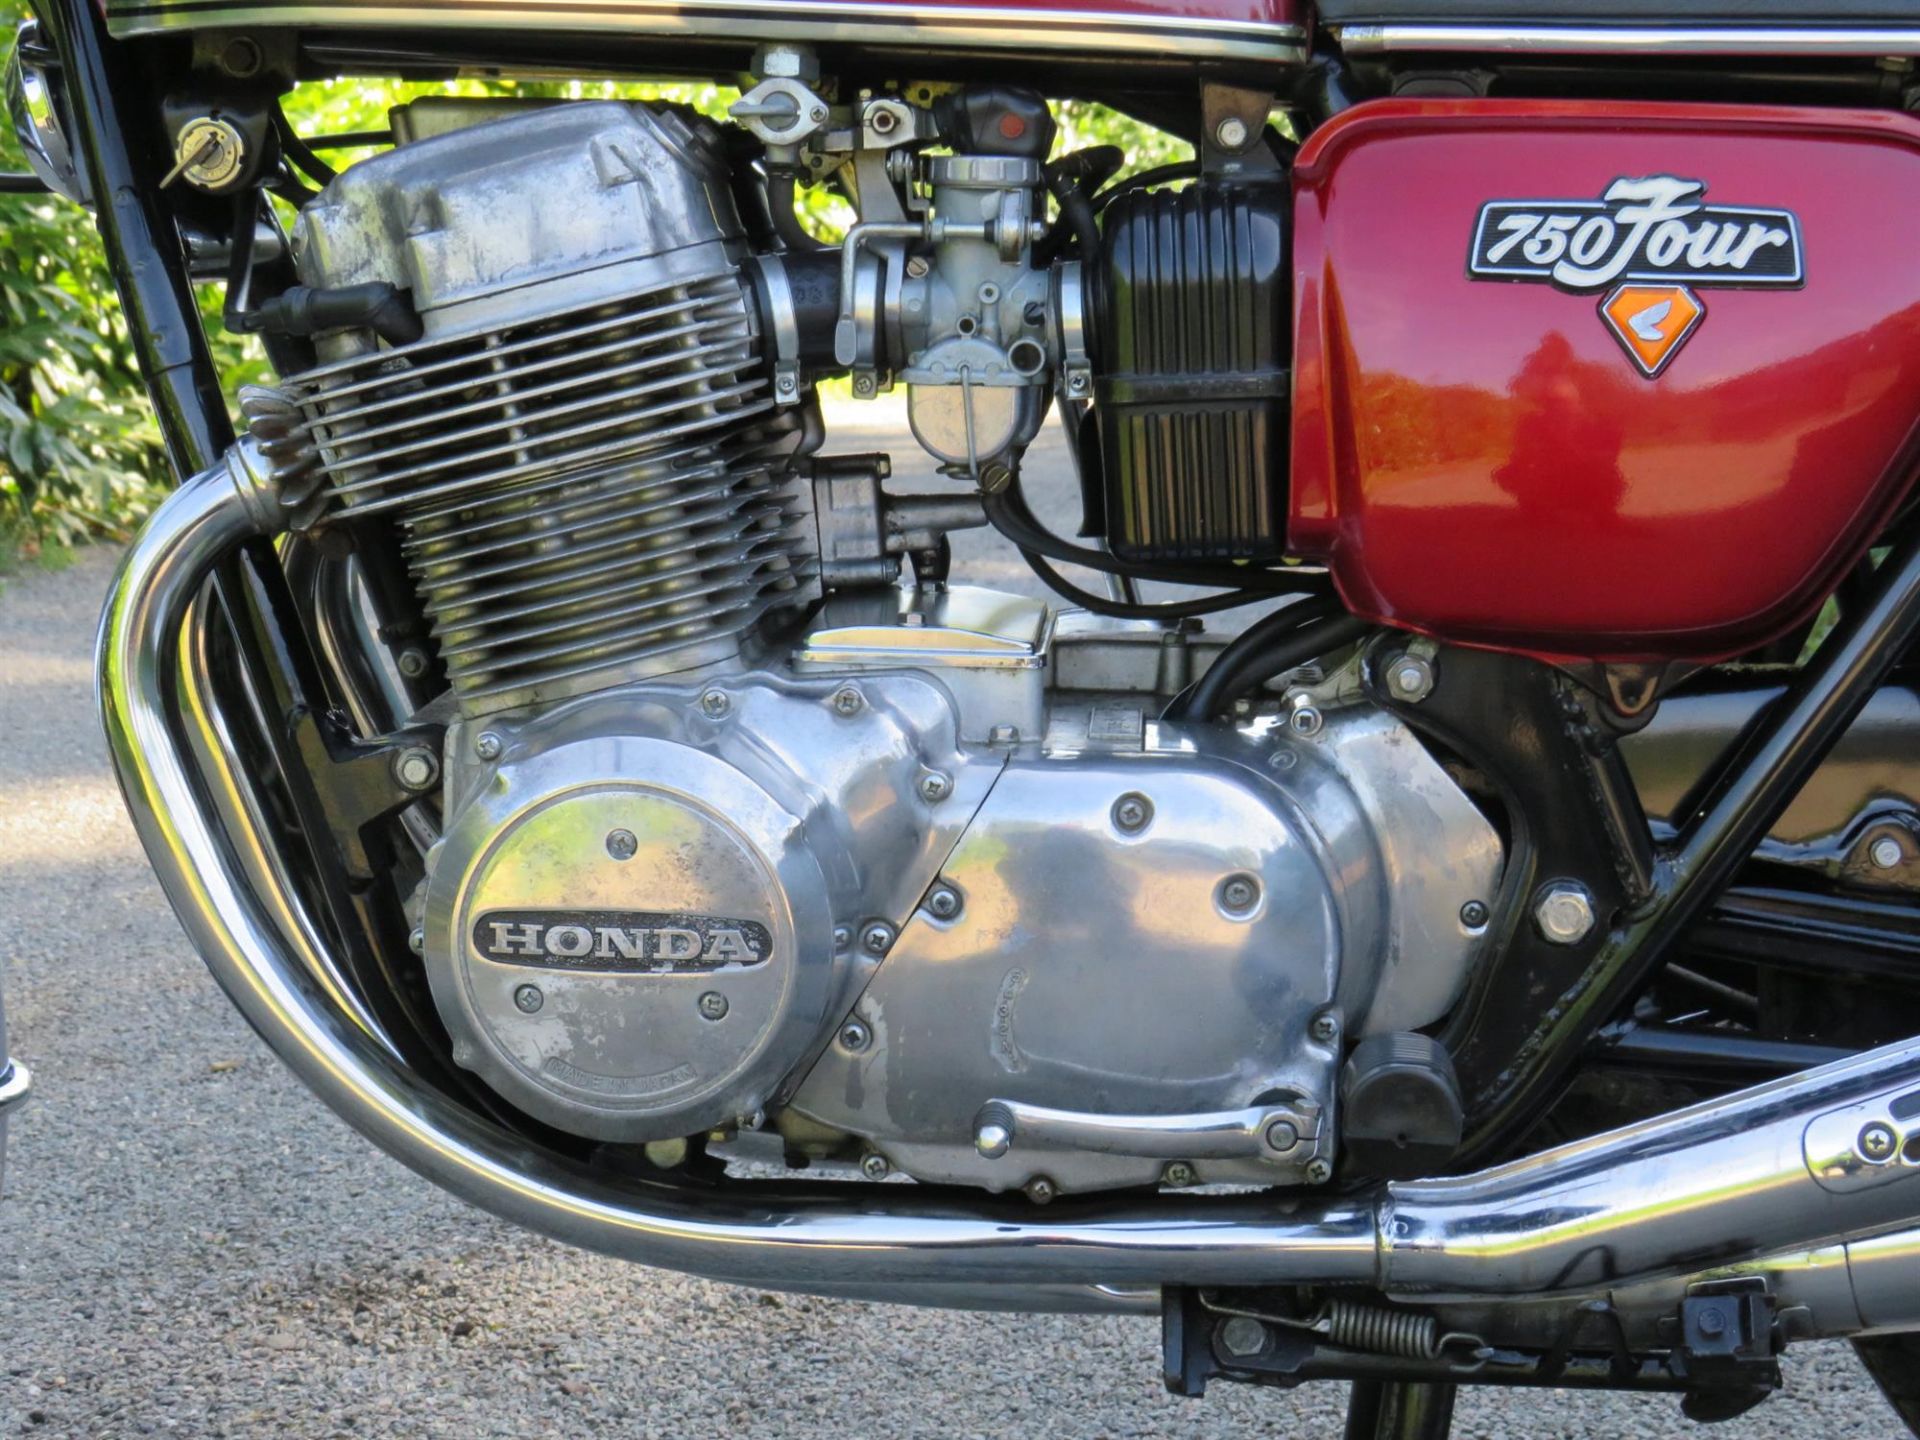 1976 Honda CB750 Four (K6) 736cc - Image 4 of 10